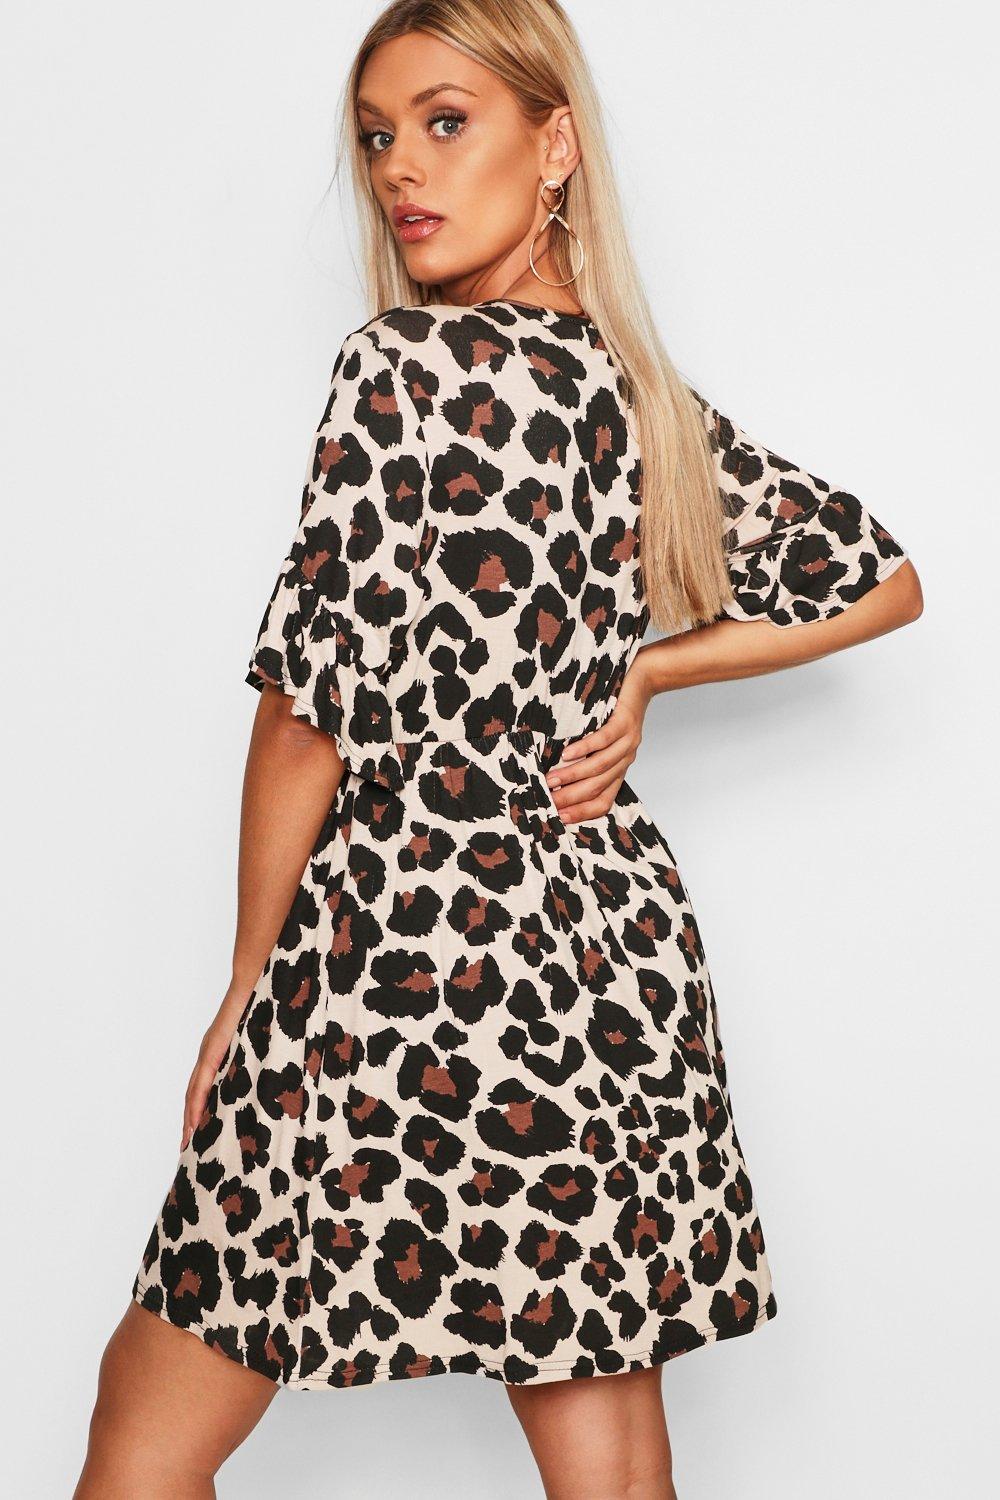 boohoo plus size leopard print dress